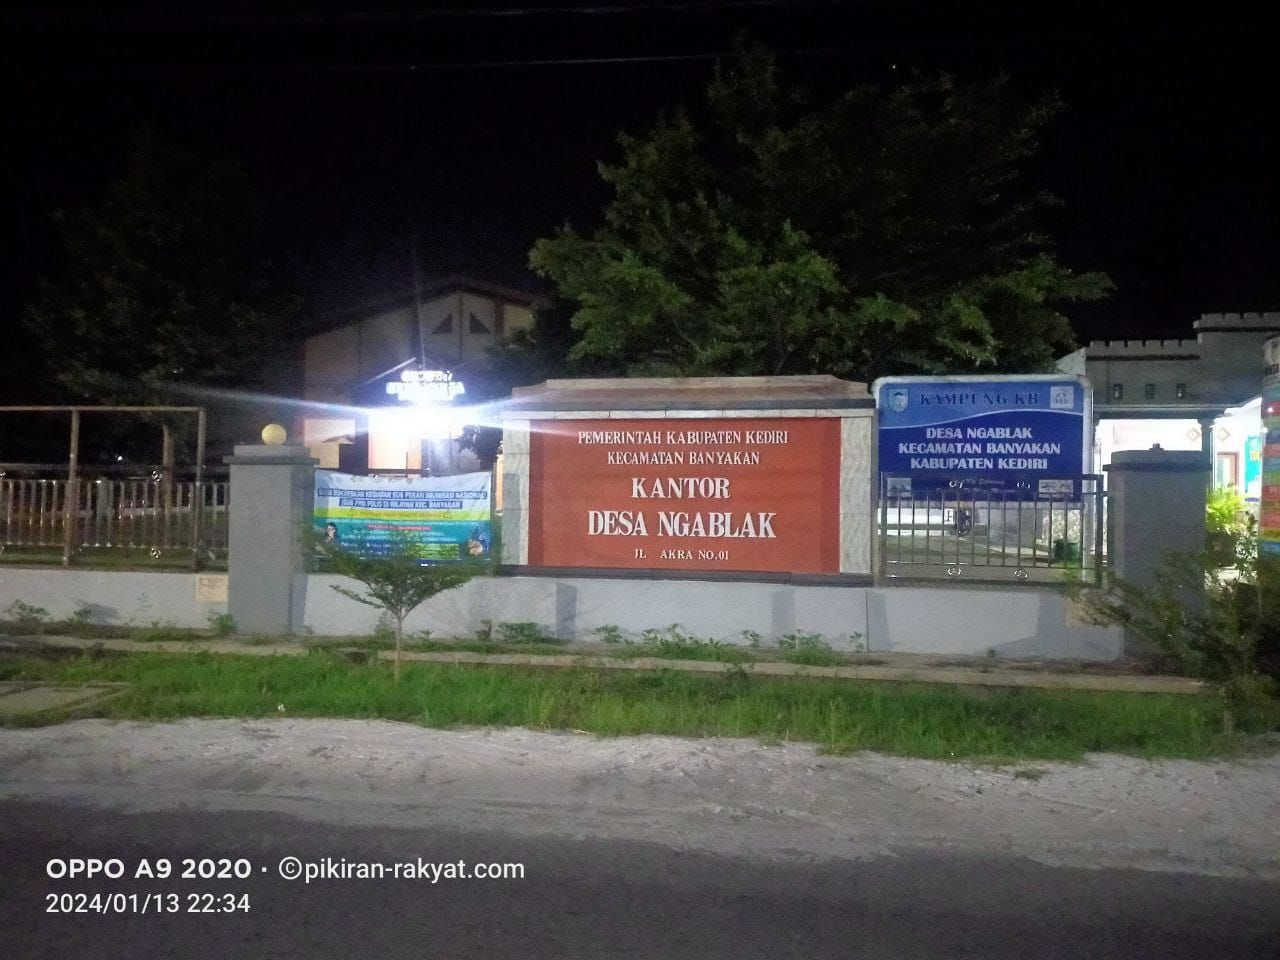 Foto. Kantor Desa Ngablak, Kecamatan Banyakan - Kabupaten Kediri